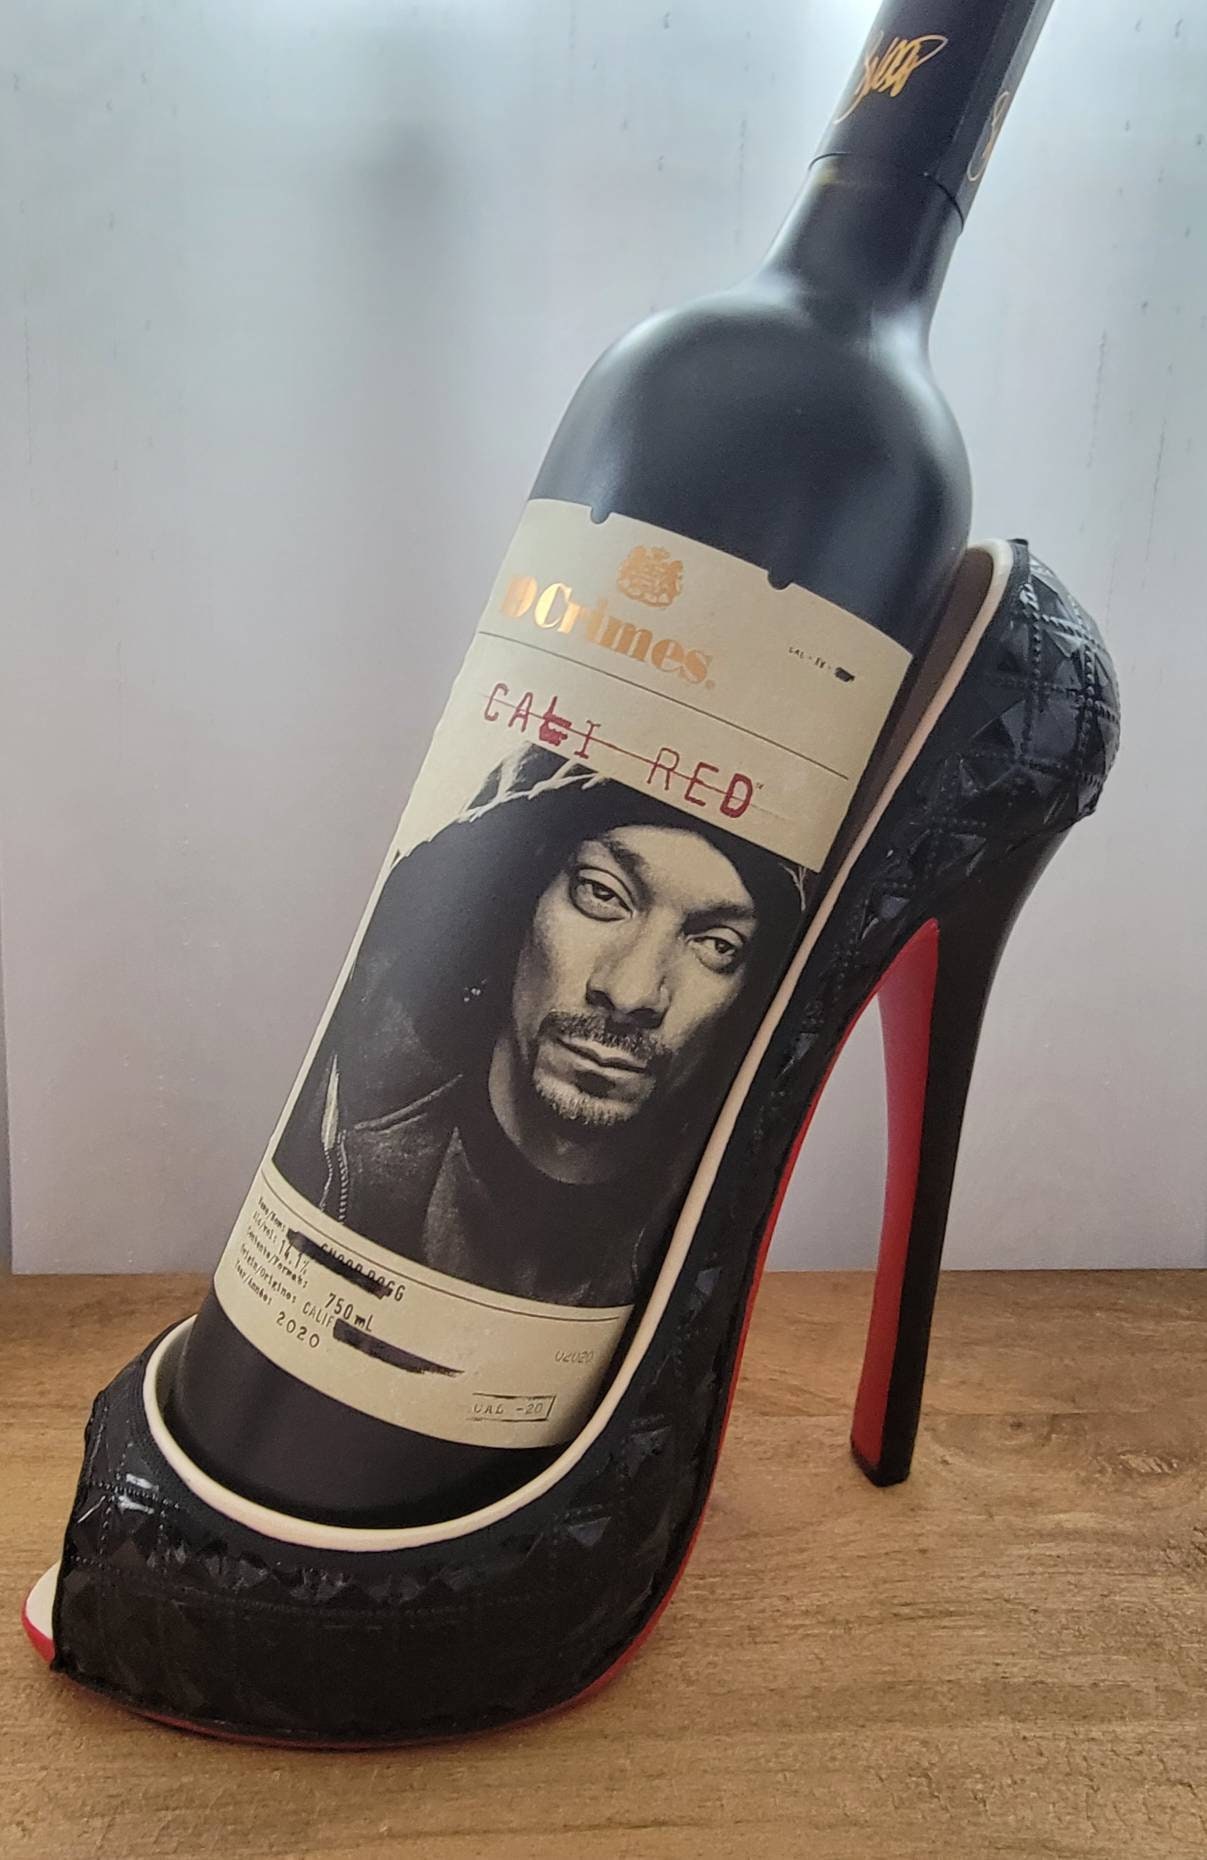 Louis Vuitton Style Heel Wine Bottle Holder 